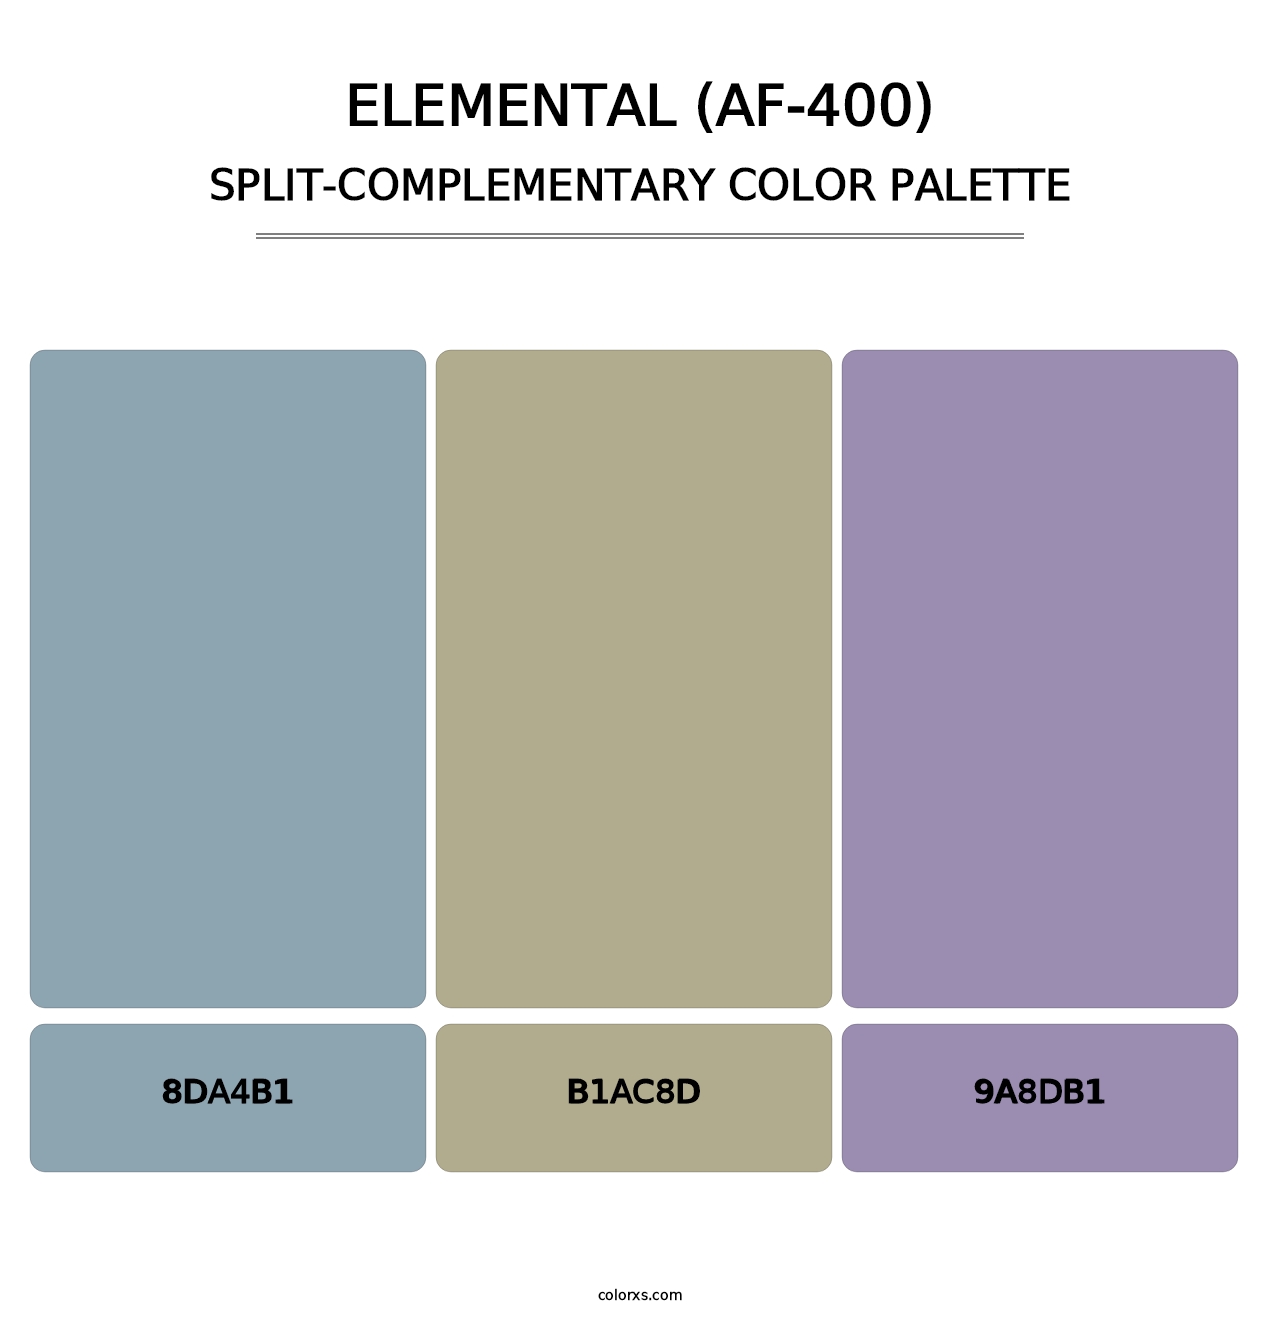 Elemental (AF-400) - Split-Complementary Color Palette